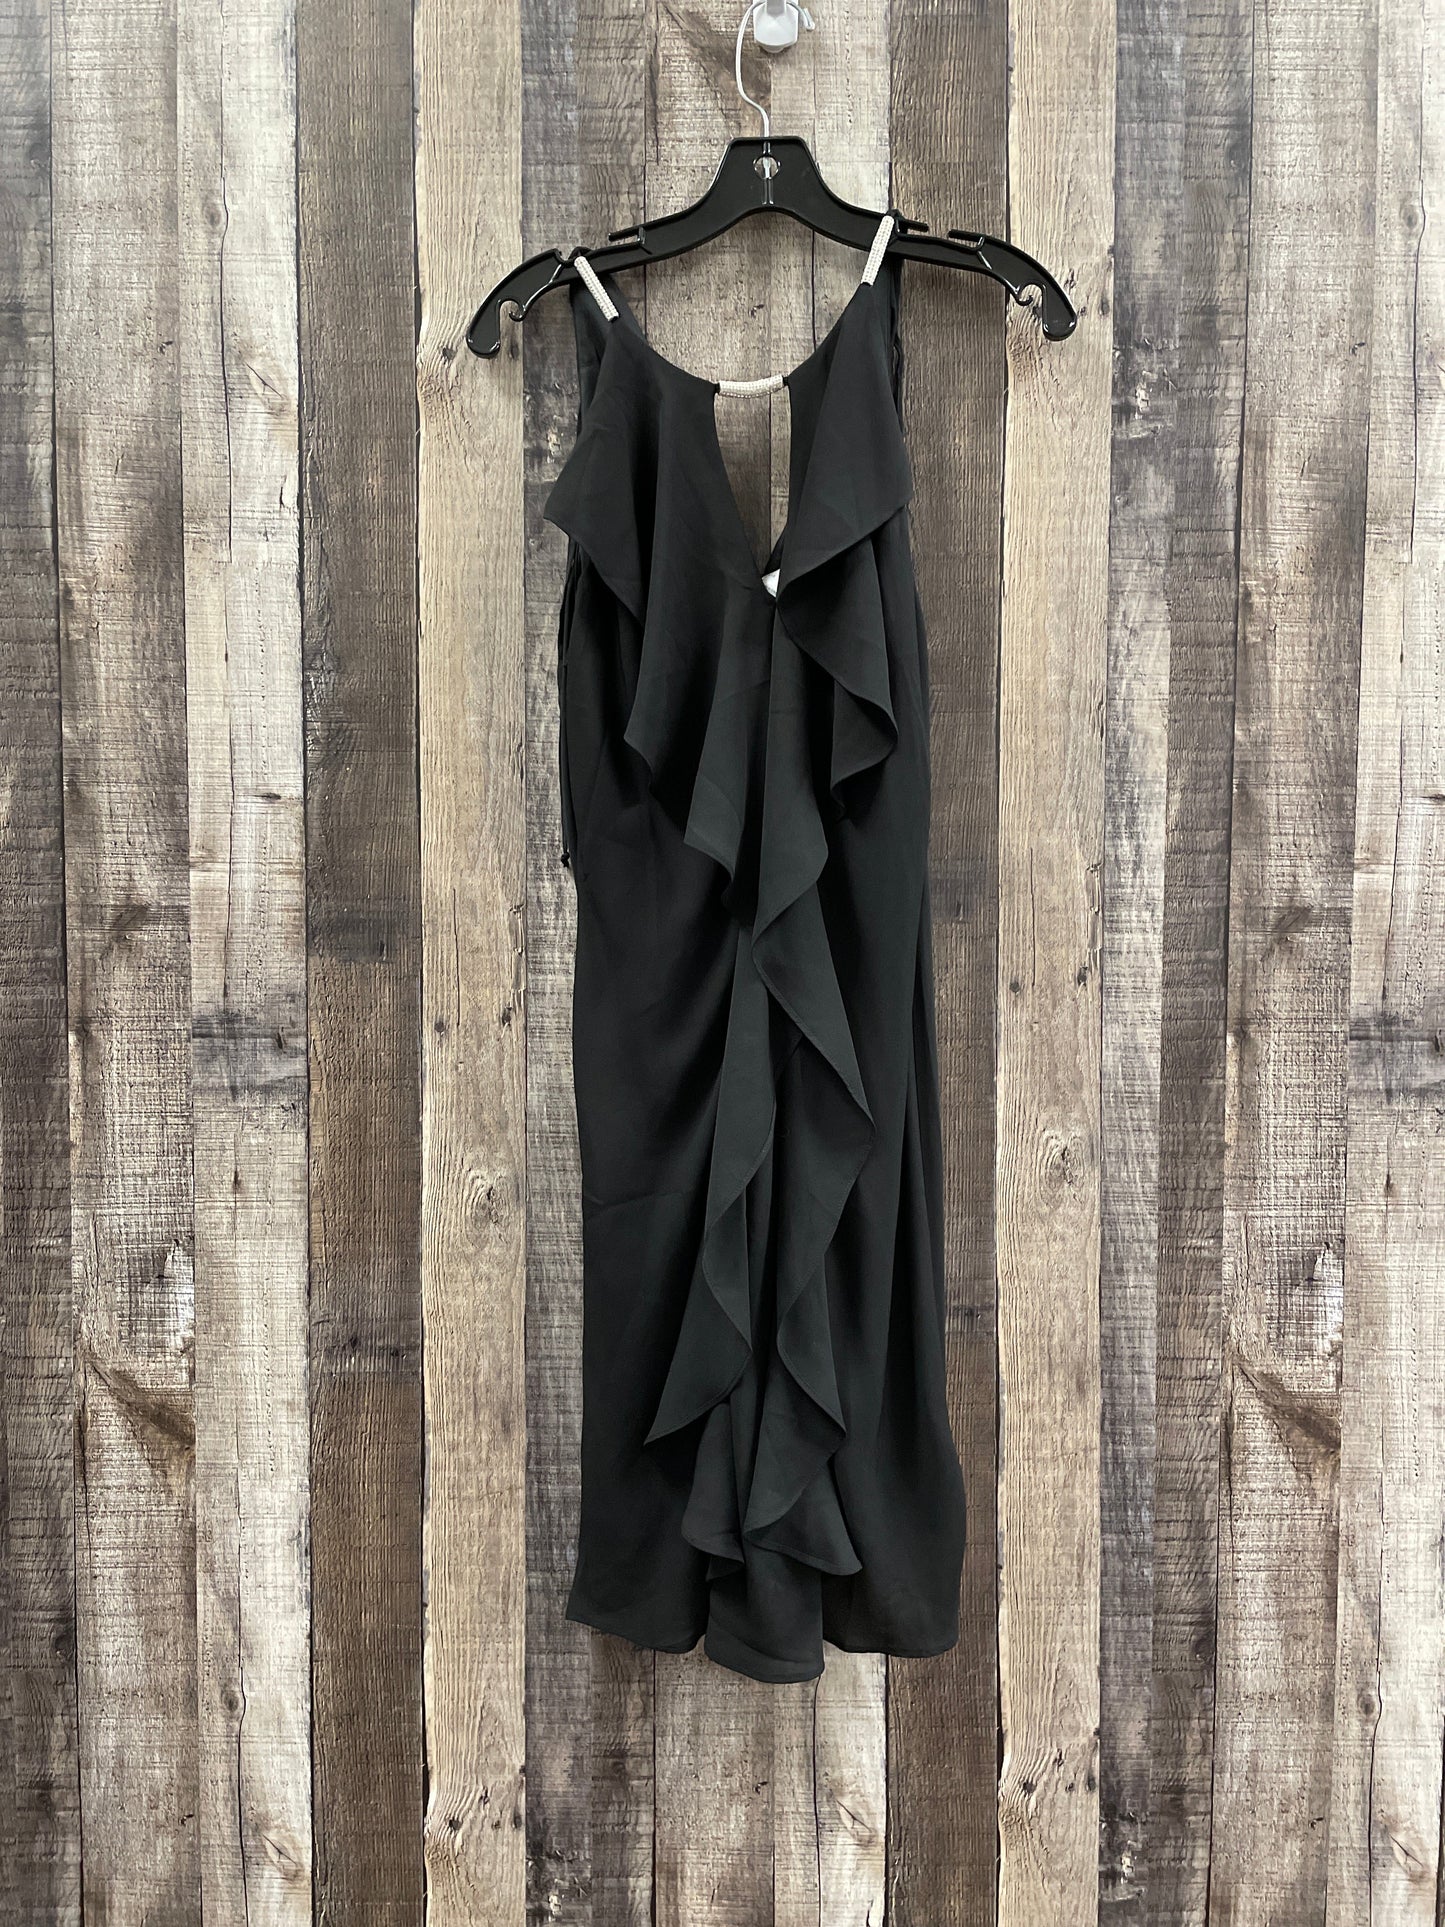 Black Dress Party Short Venus, Size M (8)